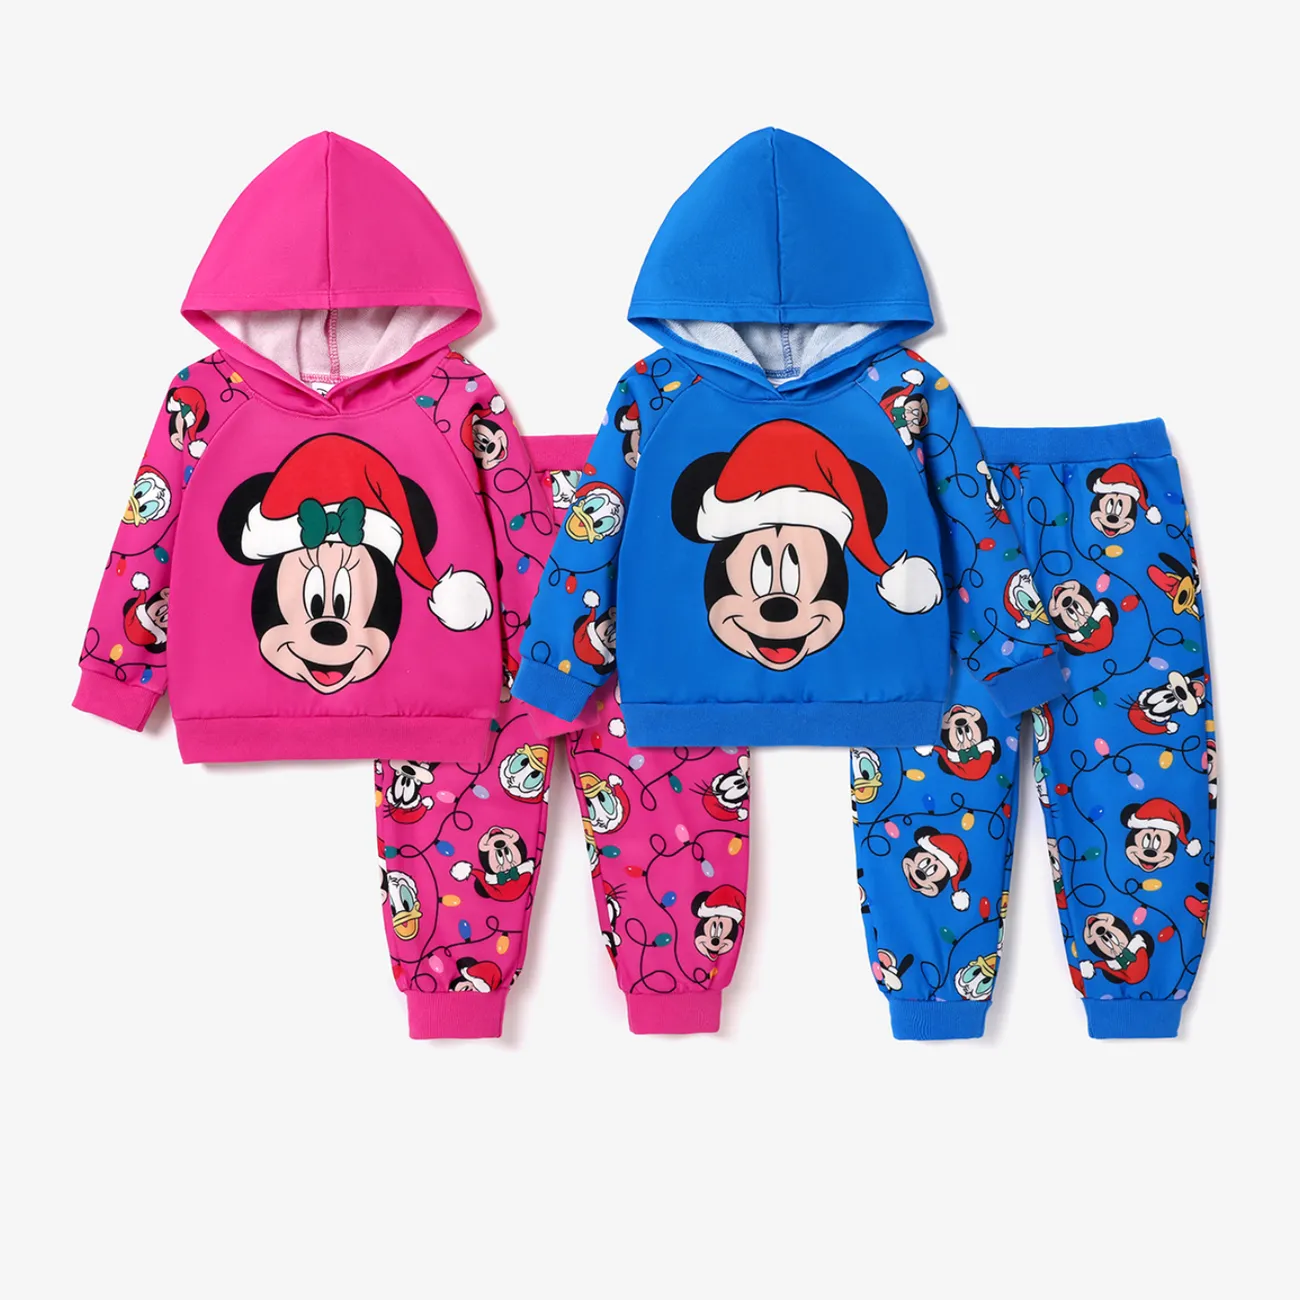 Disney Mickey and Friends Navidad 2 unidades Niño pequeño Unisex Con capucha Infantil conjuntos de sudadera Rosa caliente big image 1